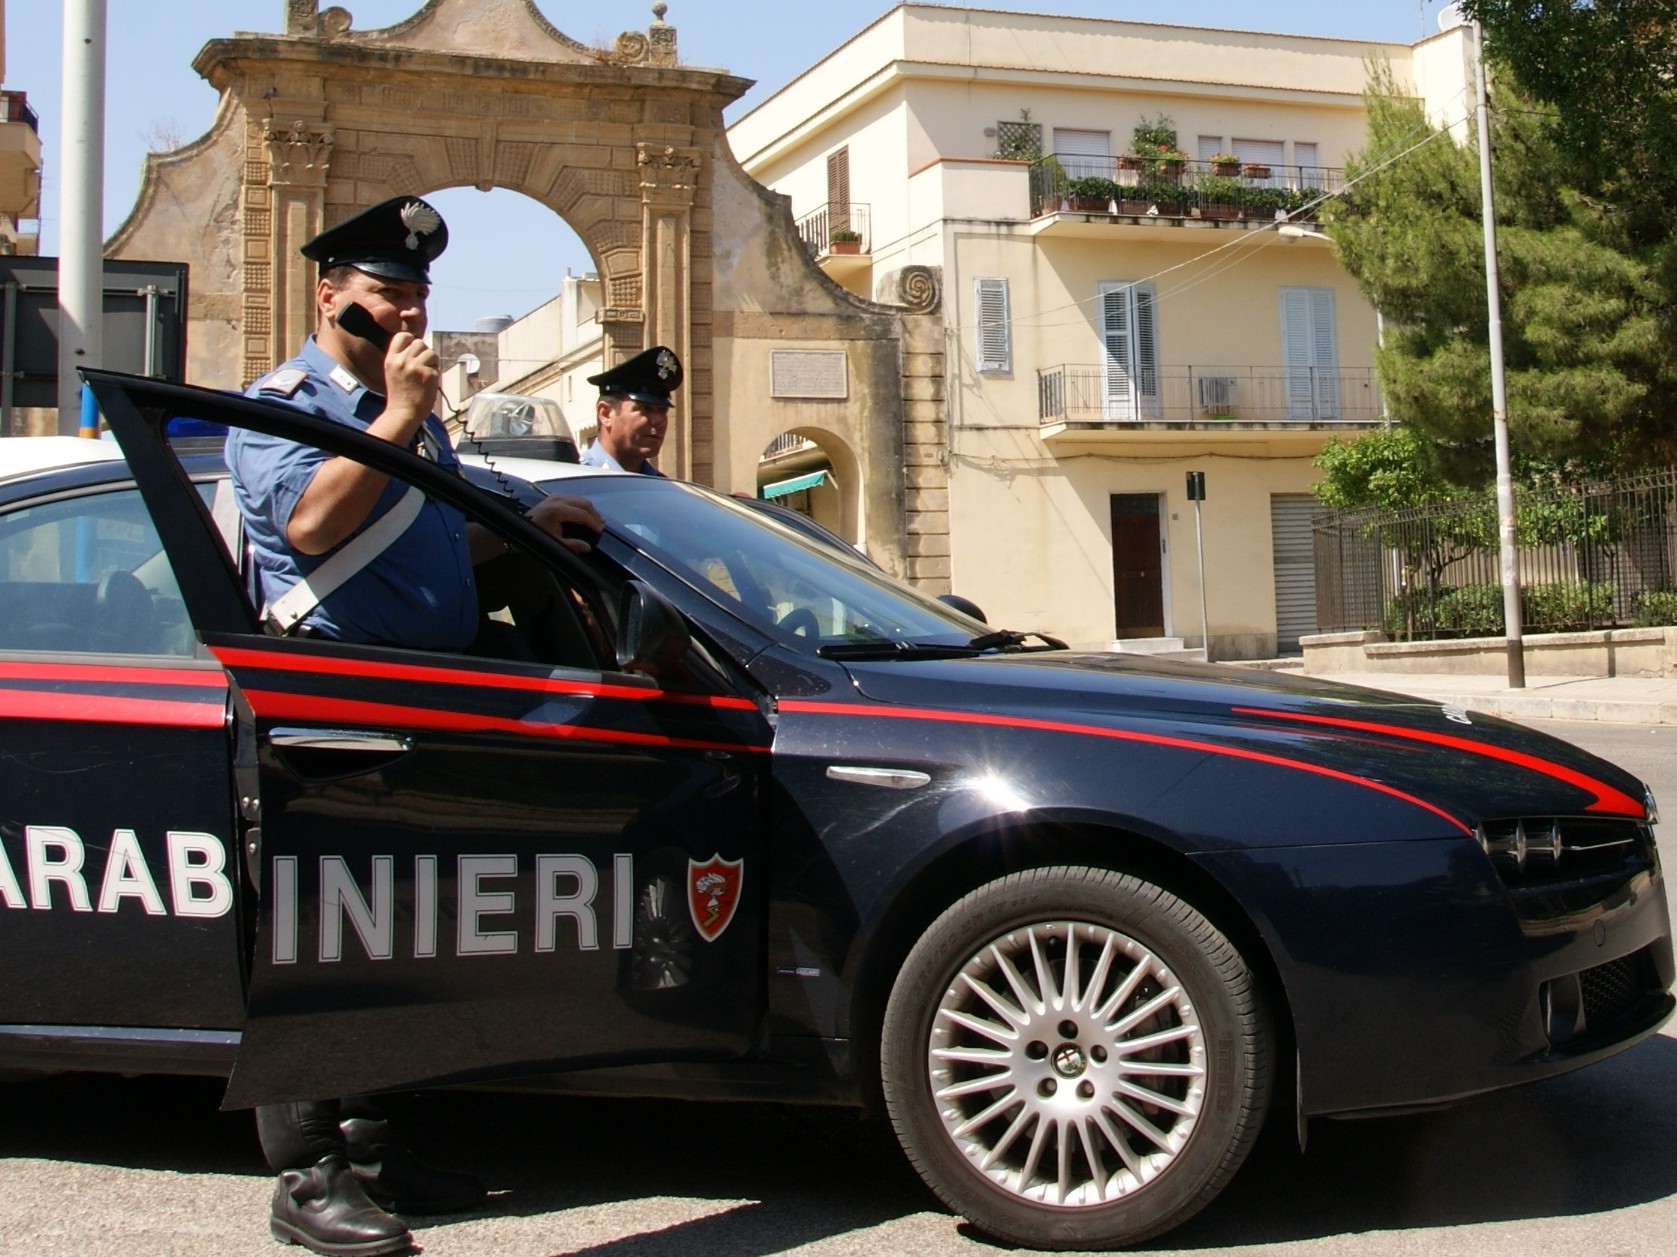 Immagine articolo: Castelvetrano, lite per futili motivi. 52enne denunciato per lesioni aggravate dai Carabinieri